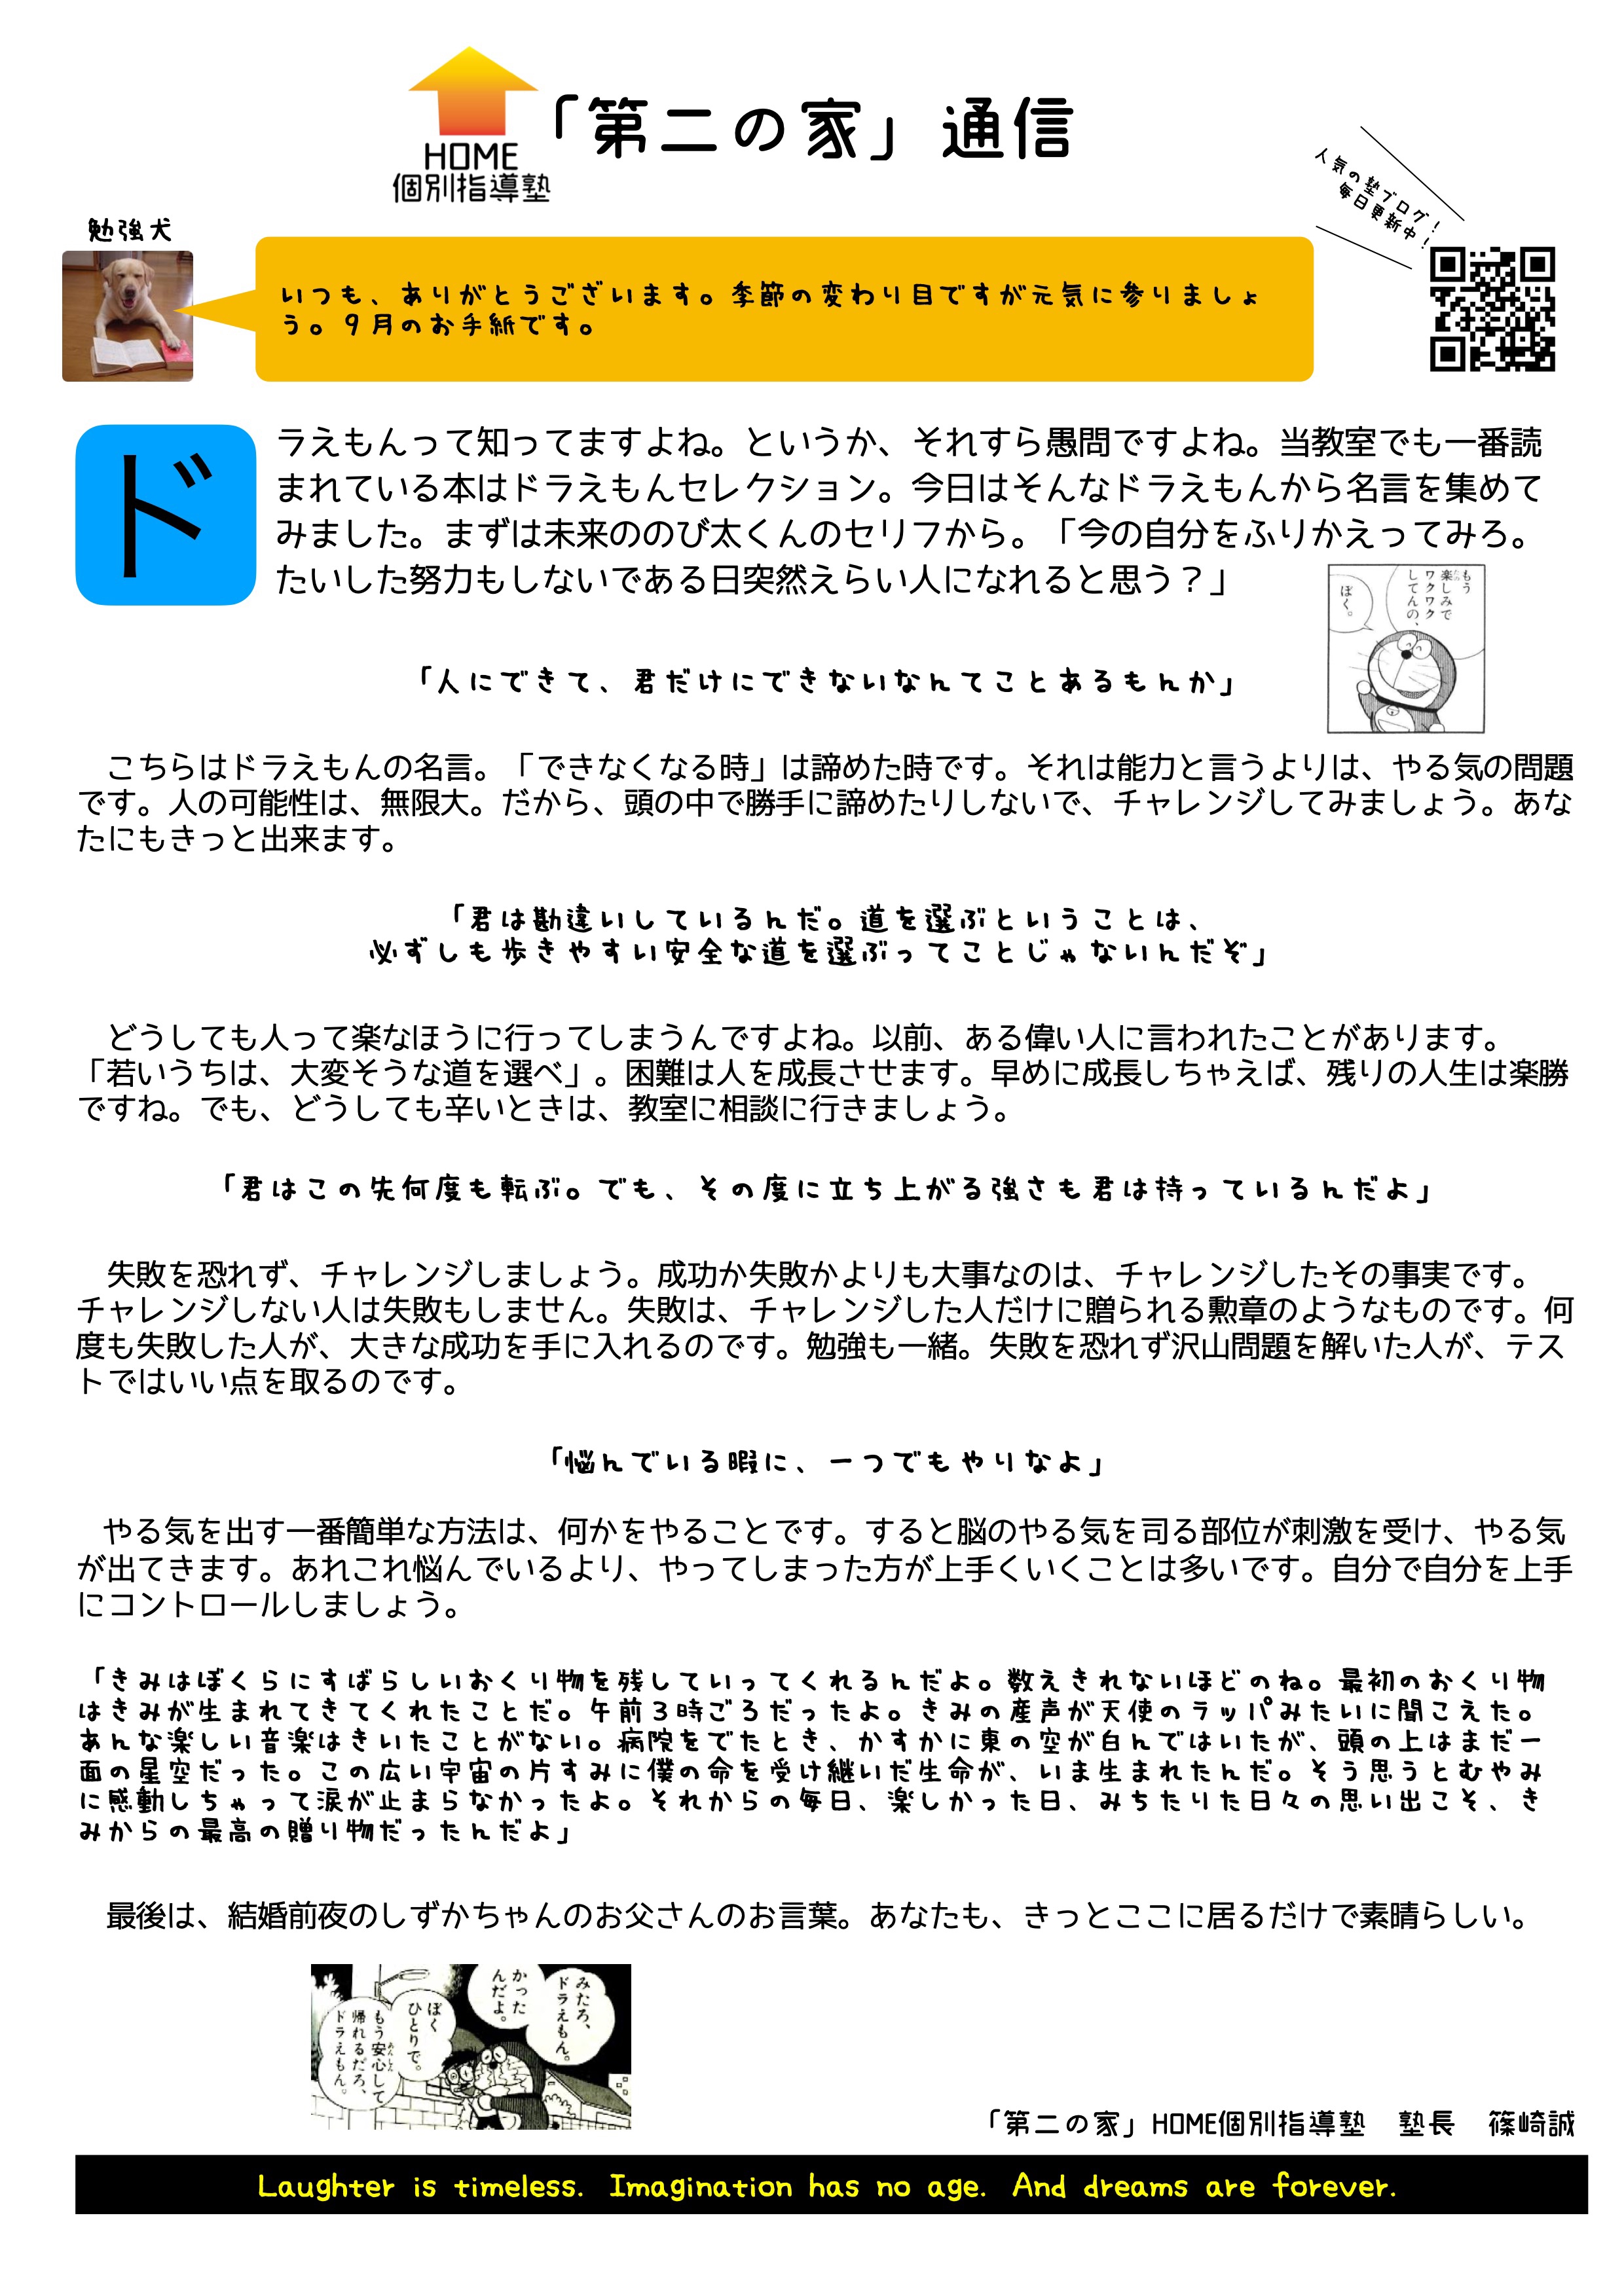 月のお手紙 ドラえもんの名言集 から始めてくれたこと 第二の家 ブログ 藤沢市の個別指導塾のお話